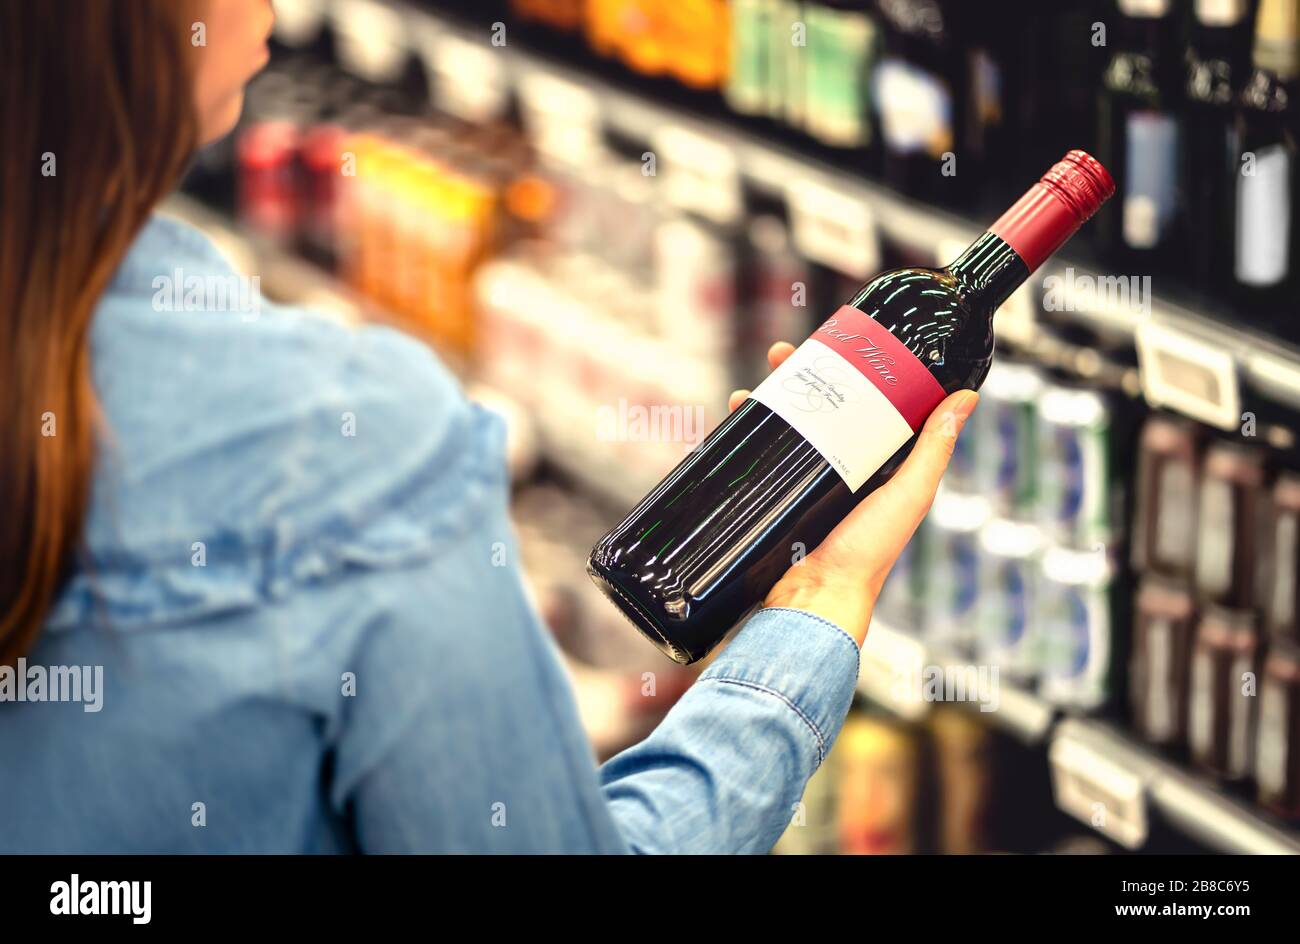 Frau, die das Etikett der Rotweinflasche im Spirituosenladen oder Alkoholbereich im Supermarkt liest. Regal voller alkoholischer Getränke. Stockfoto